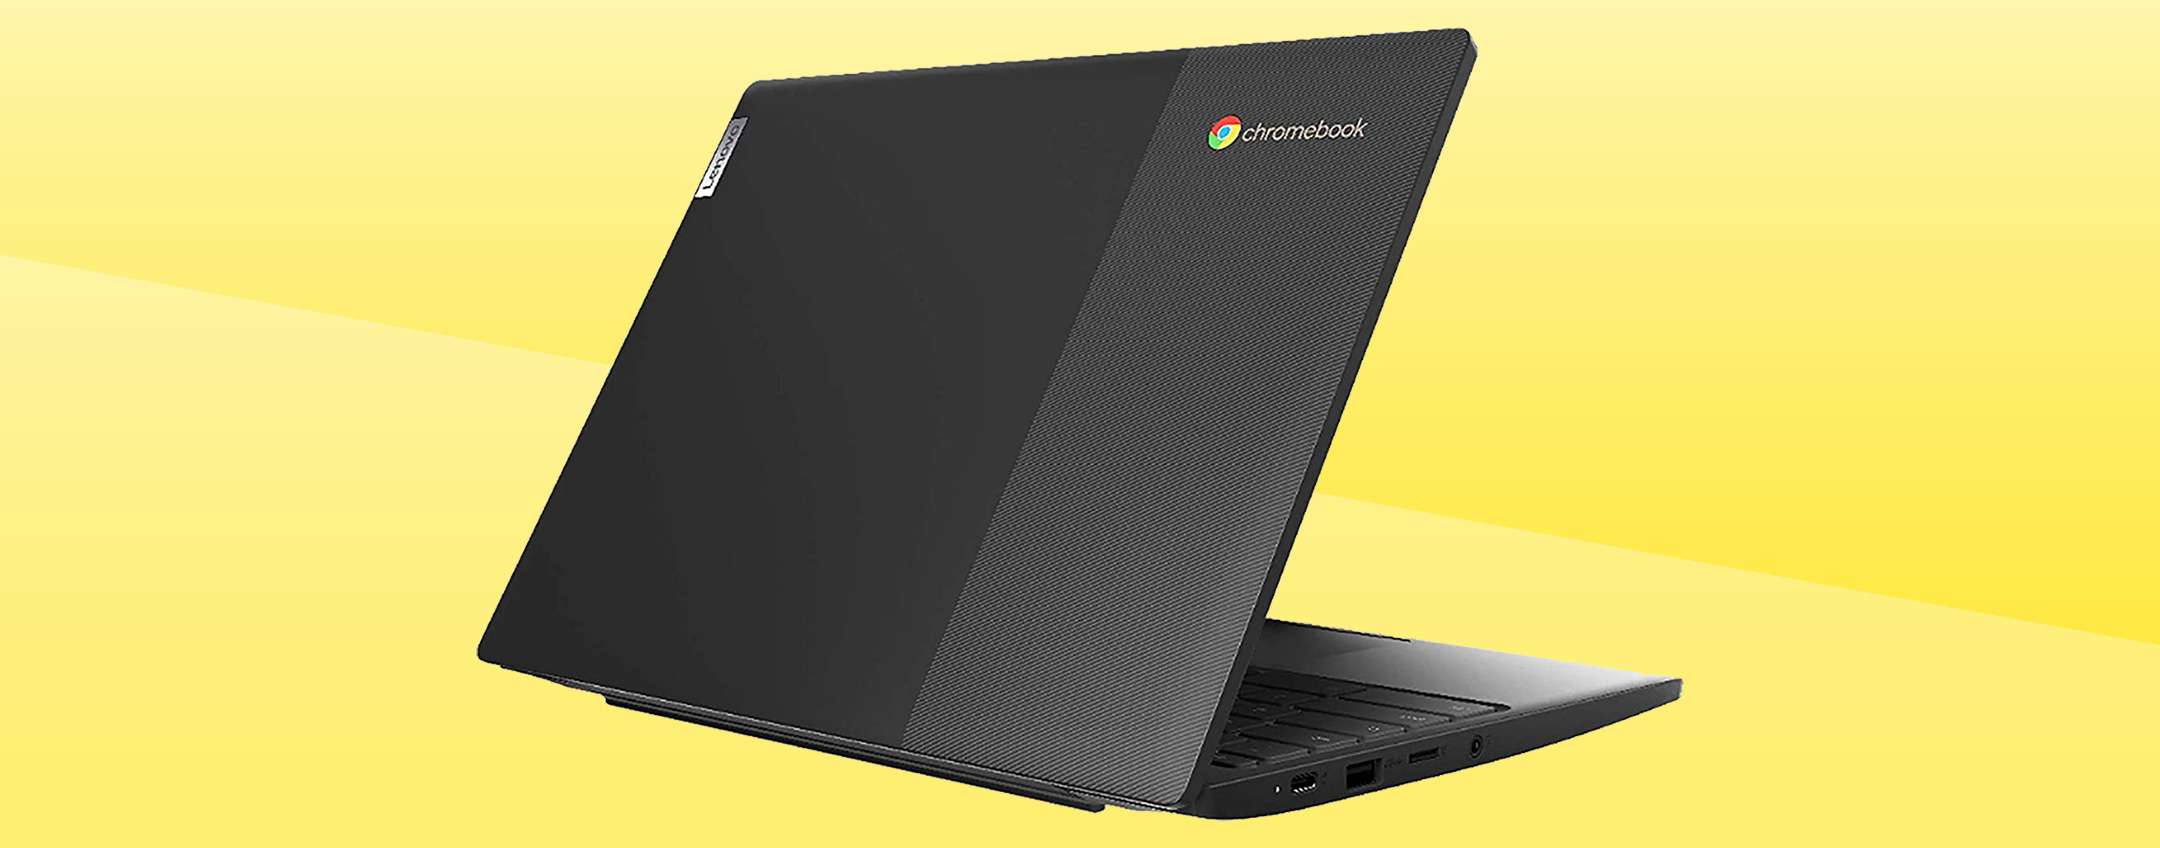 Lenovo Ideapad 3 Chromebook A 114€ Un Affare 